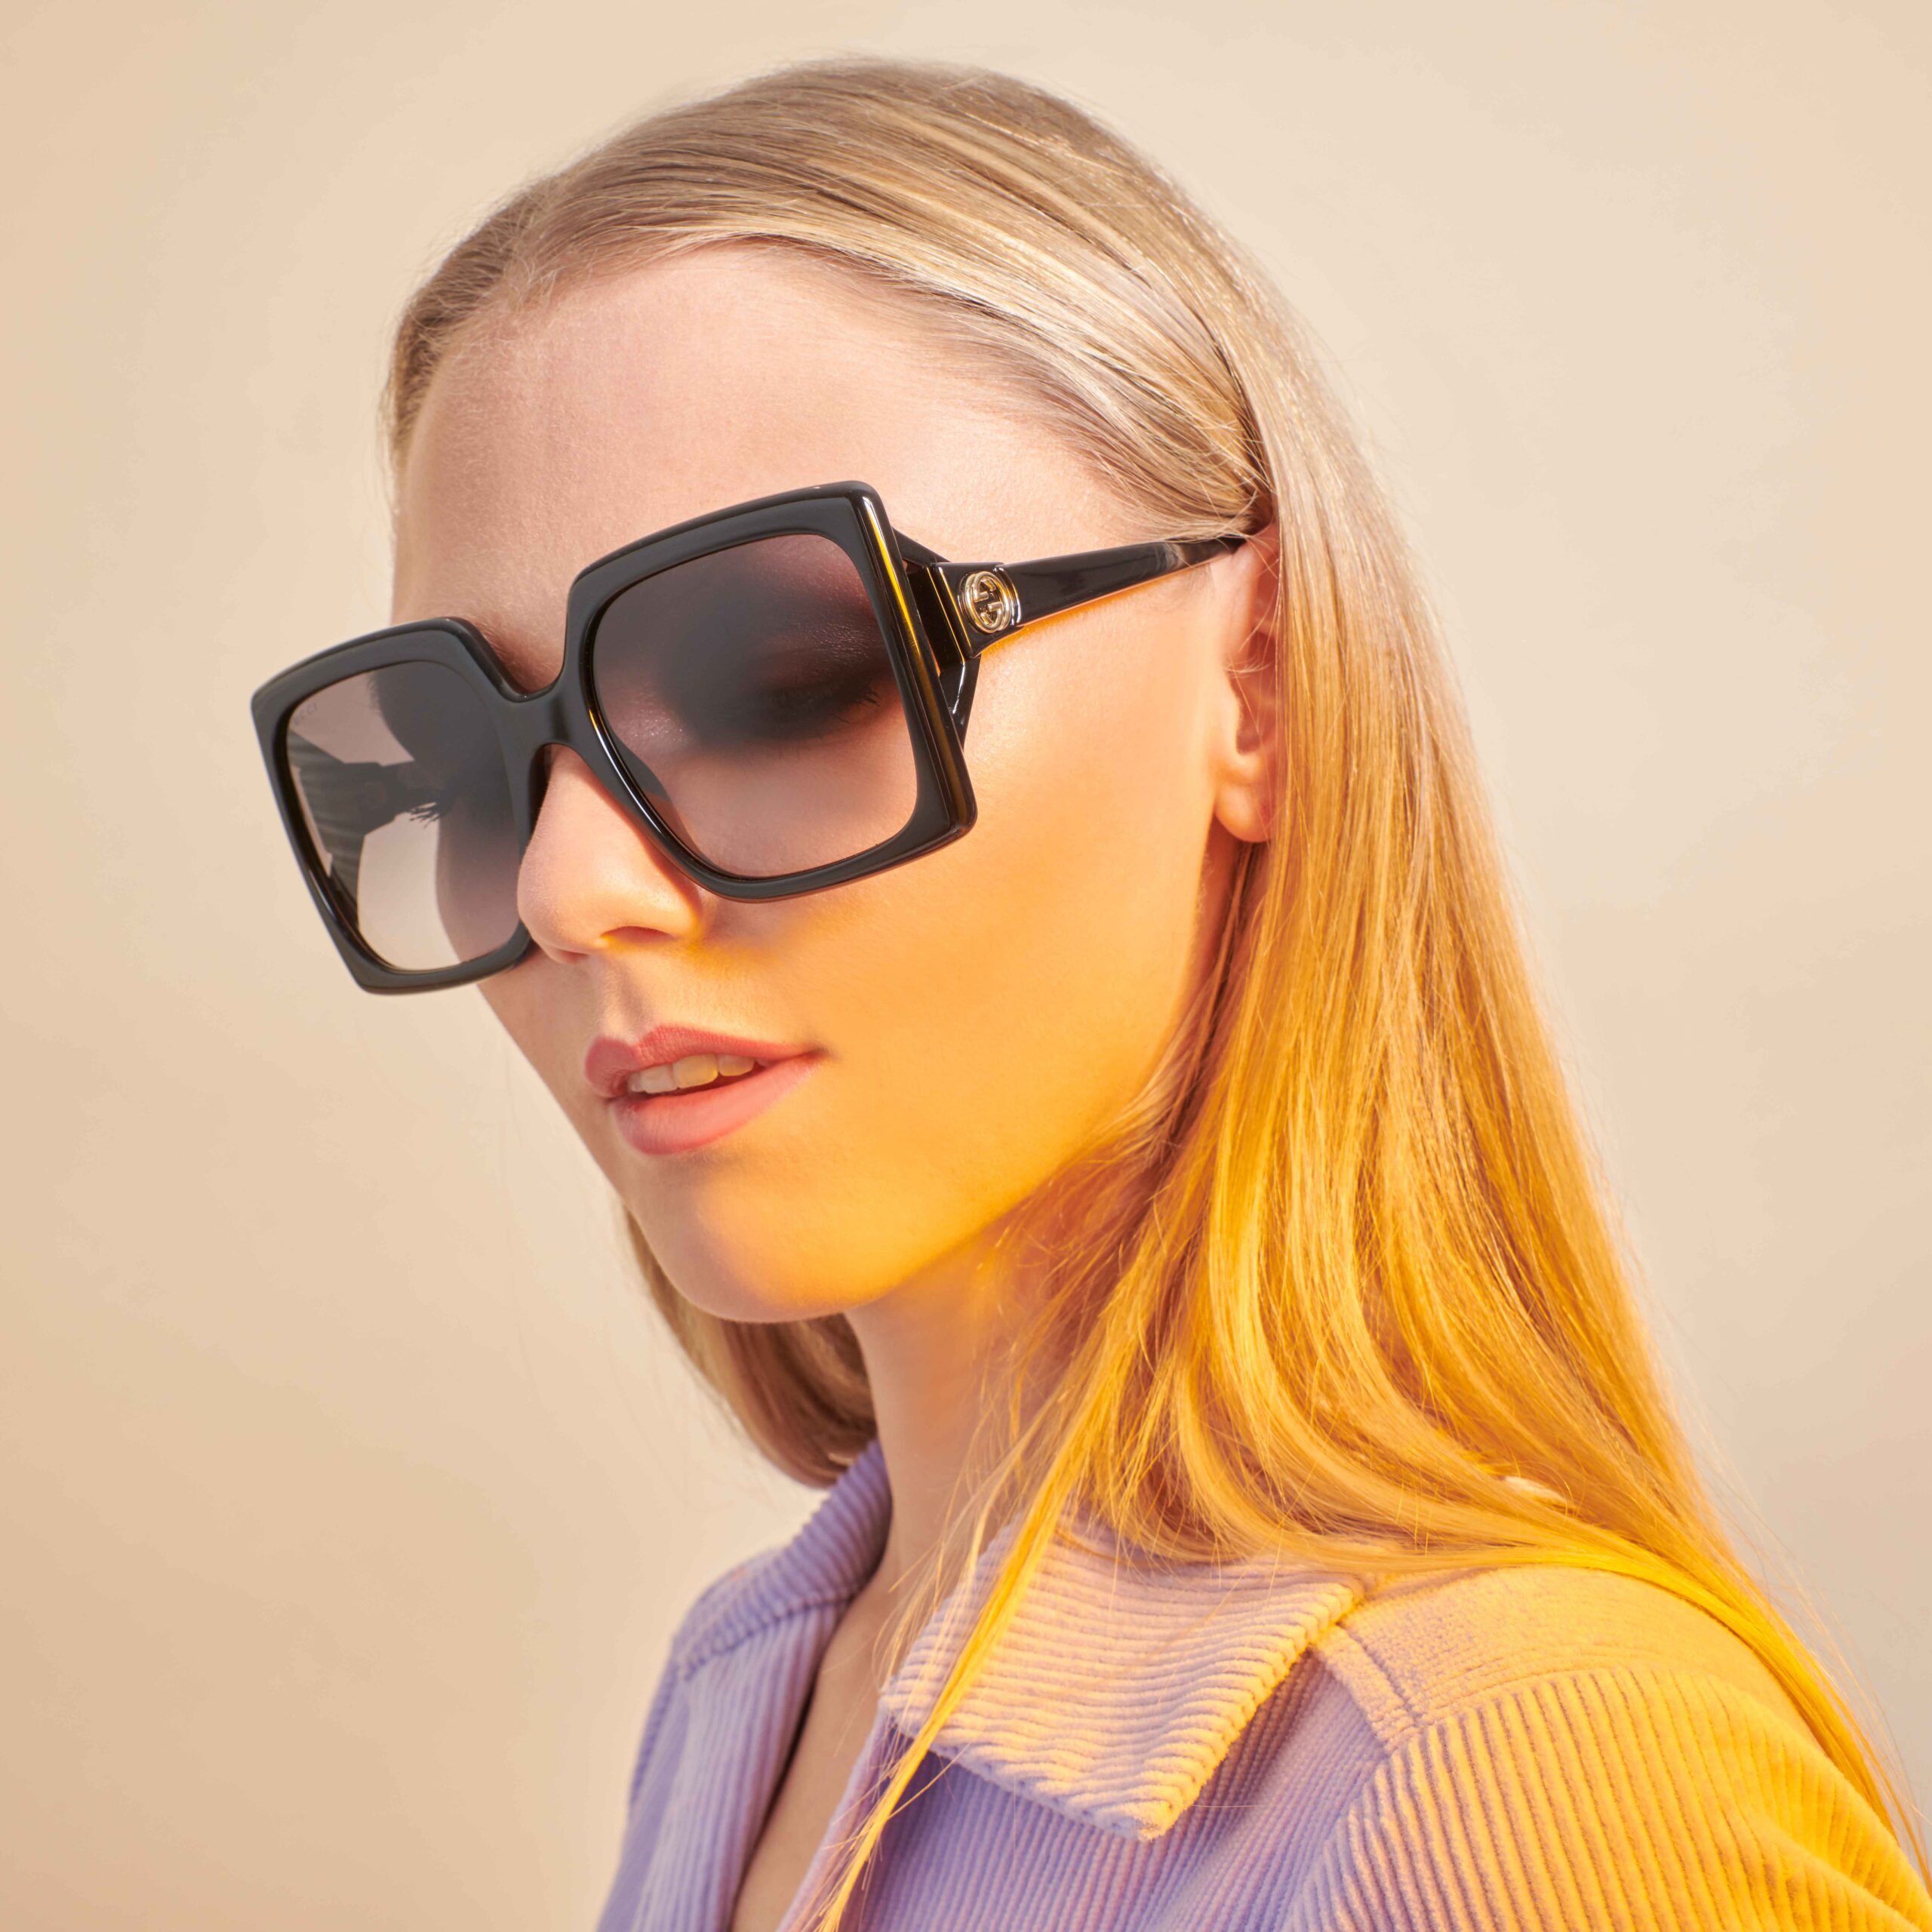 burgemeester Doorbraak Bedenk Gucci zonnebrillen - shop online of in de winkel van optiek Lammerant